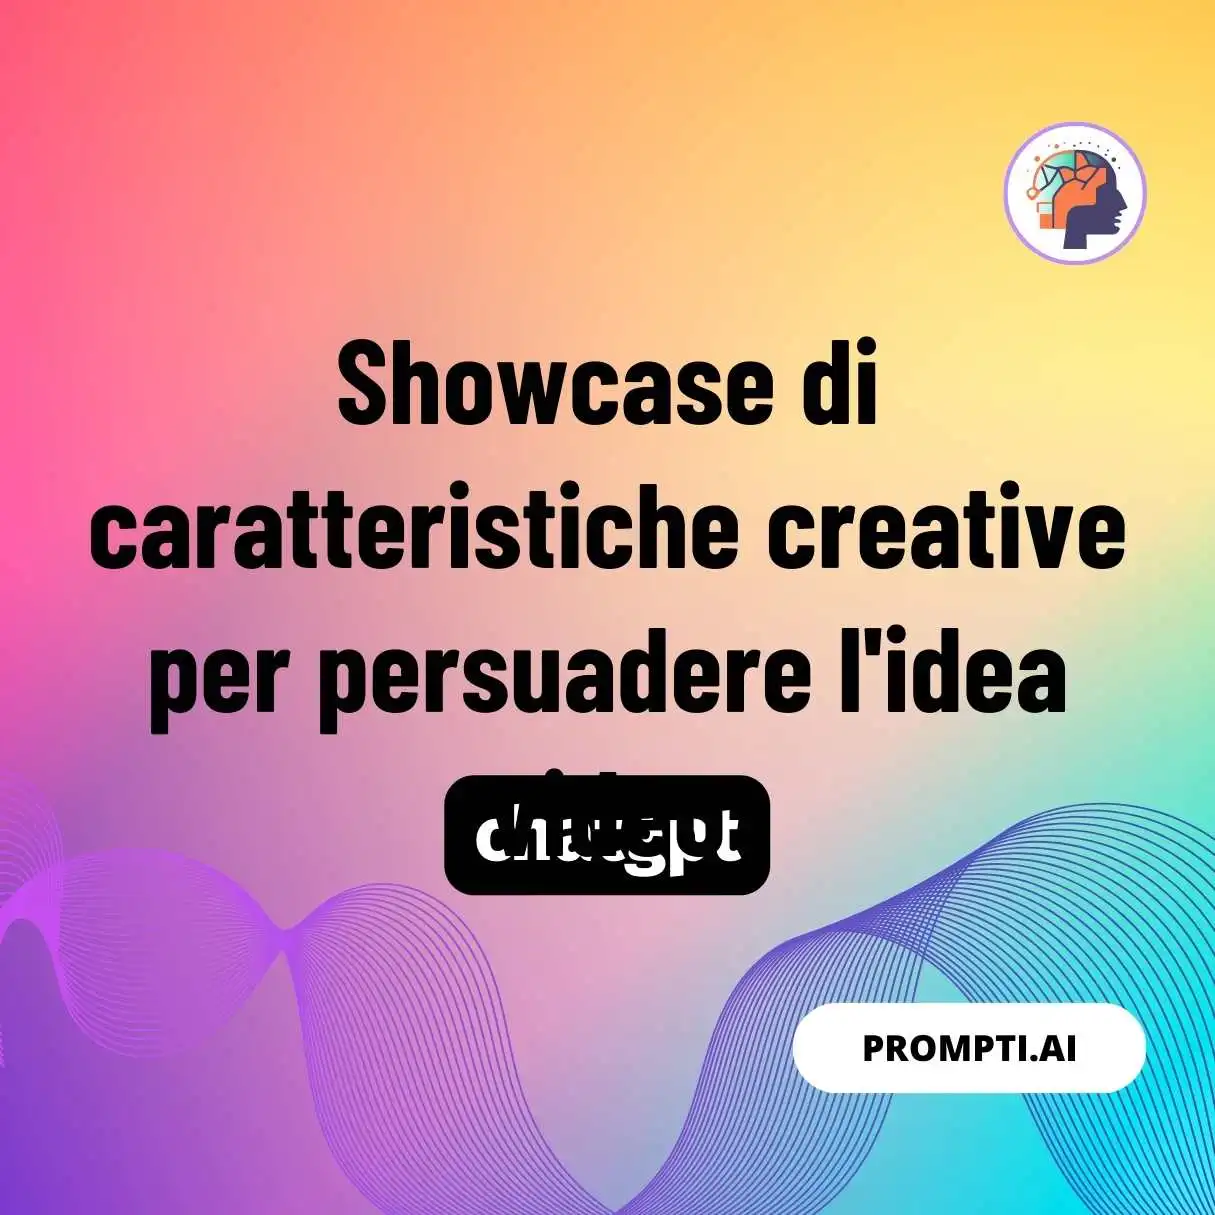 Showcase di caratteristiche creative per persuadere l’idea video